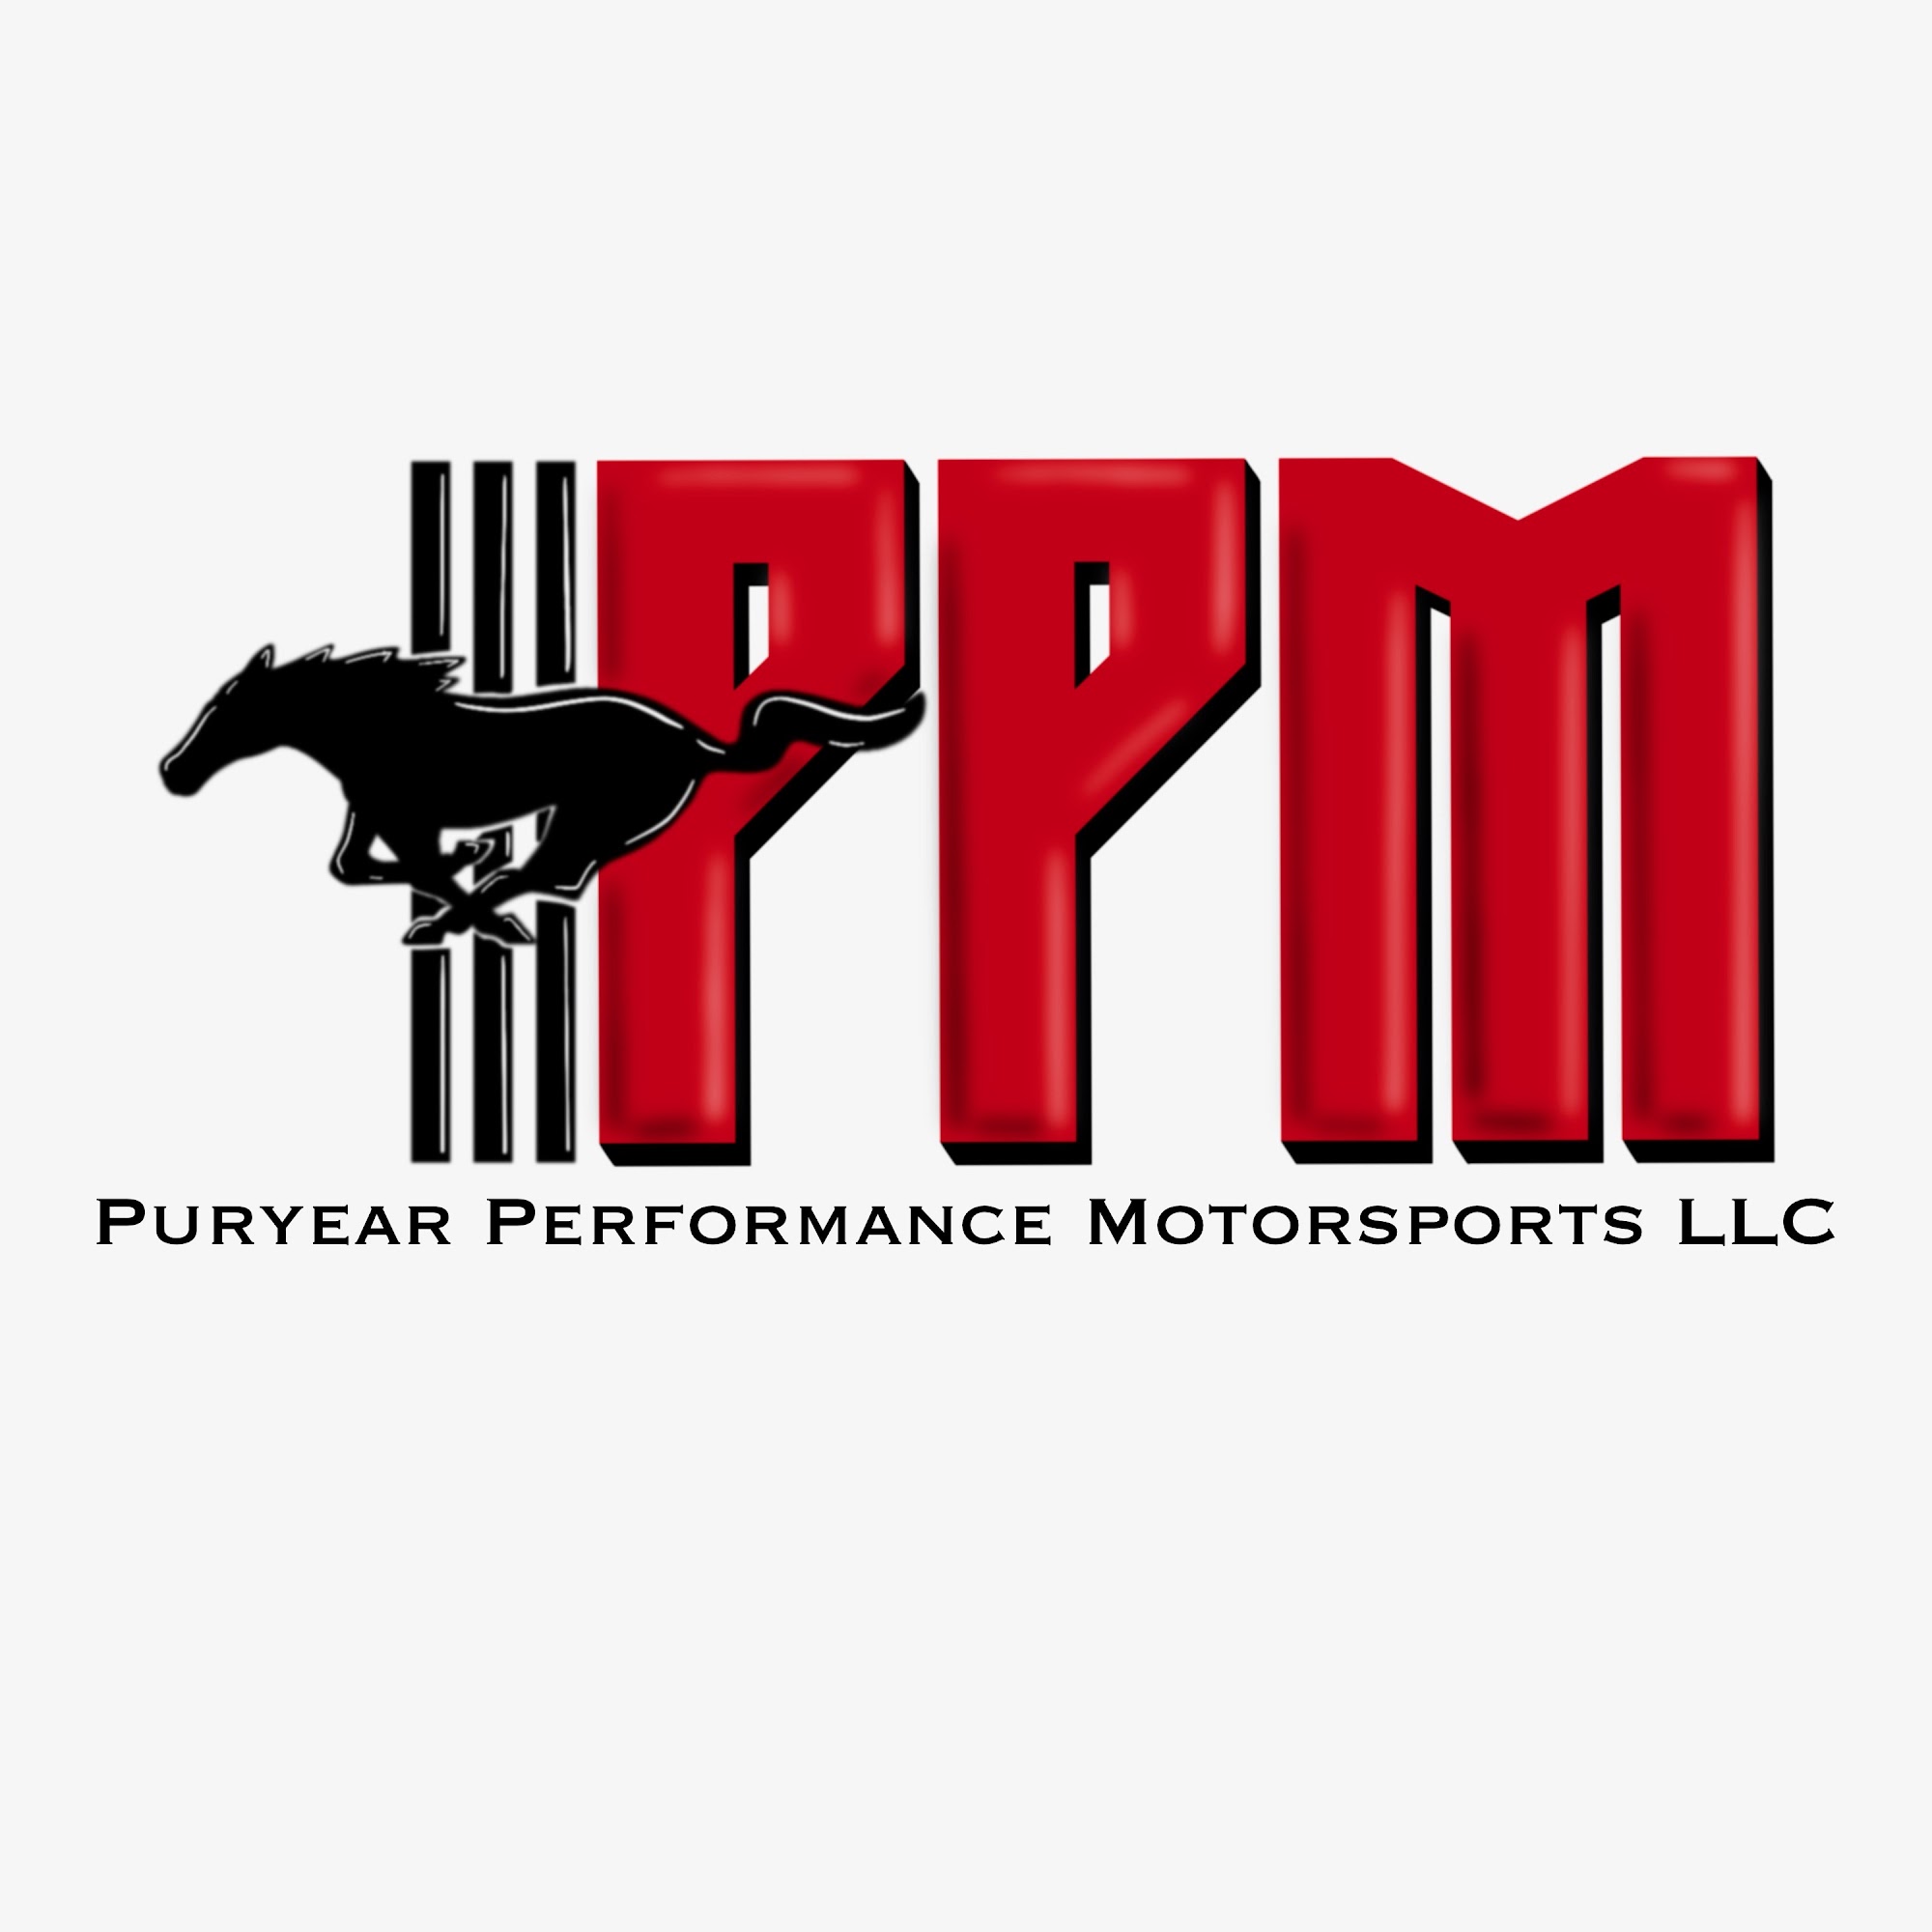 Puryear Performance Motorsports